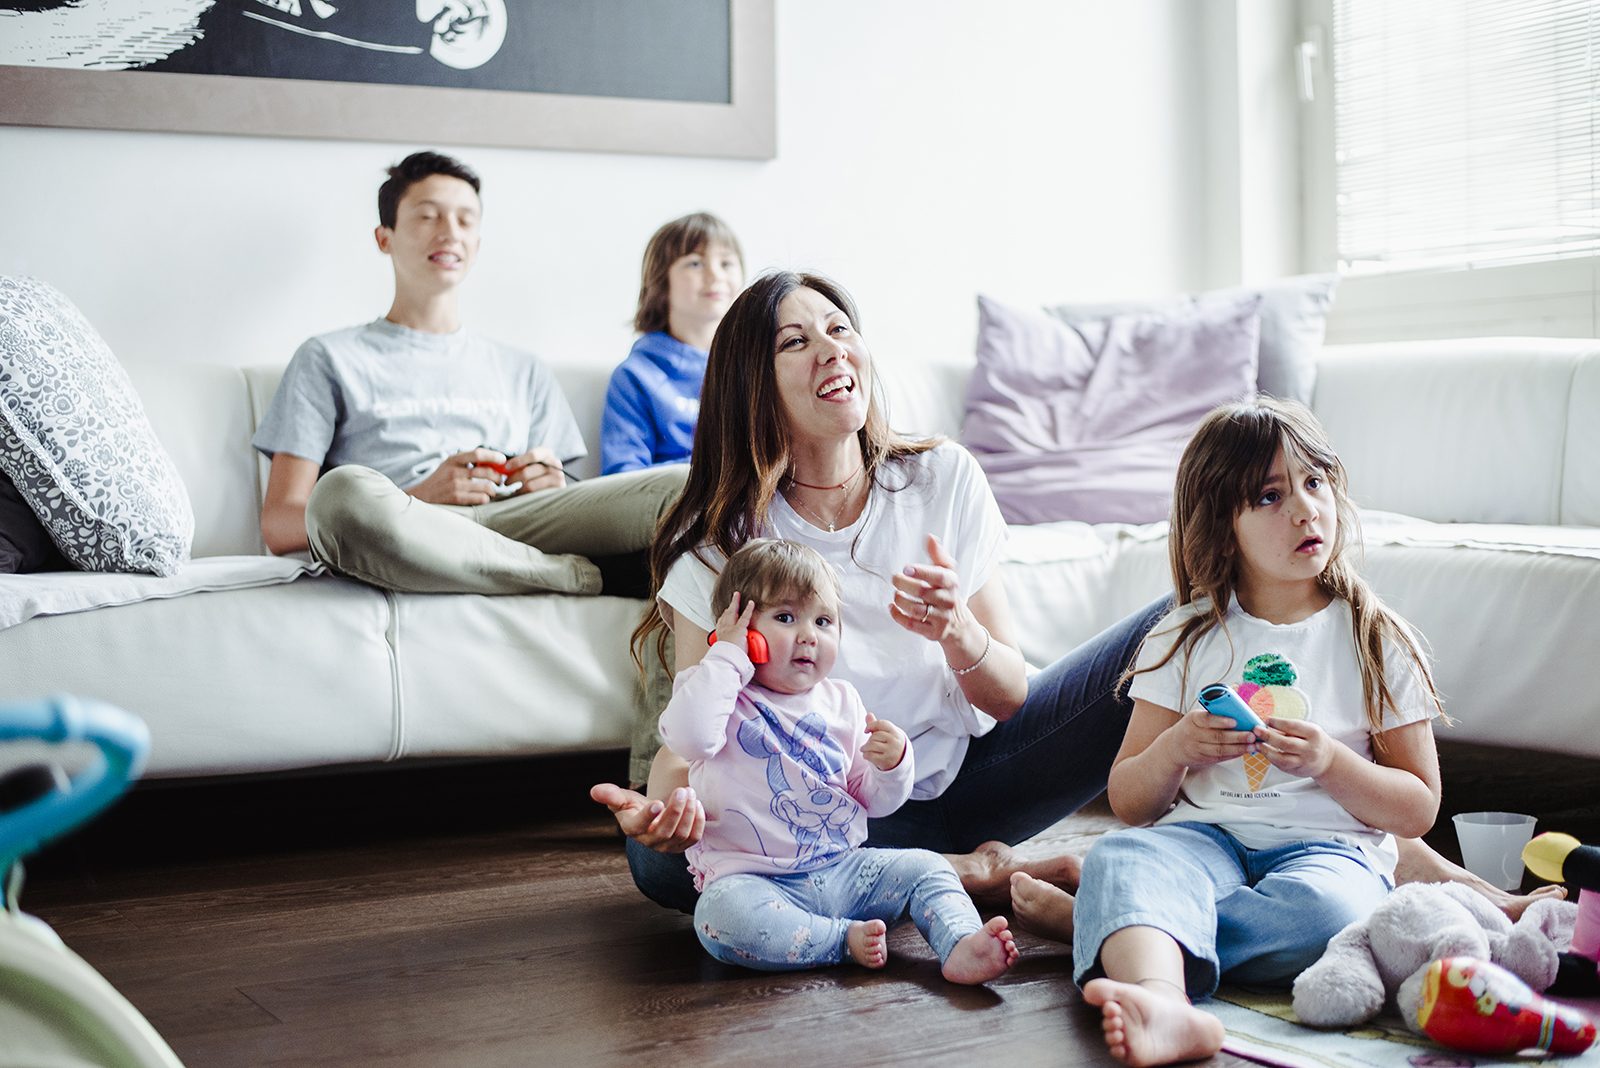 Nintendo Switch: la console per tutta la famiglia! ricominciodaquattro